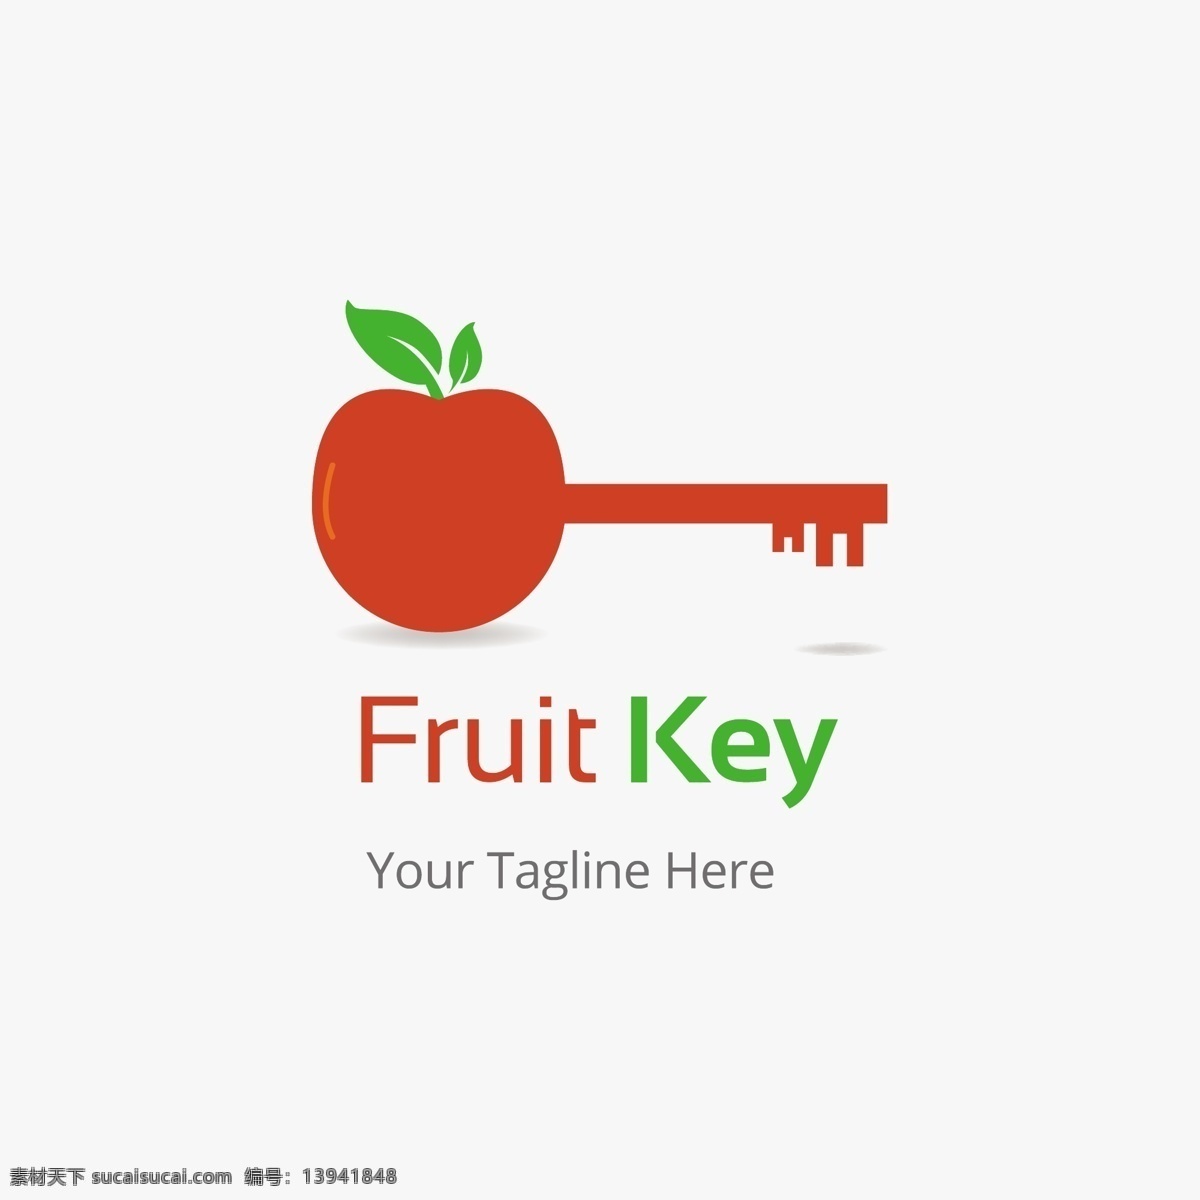 钥匙 商务 标志 矢量 简约设计 矢量图标 广告logo